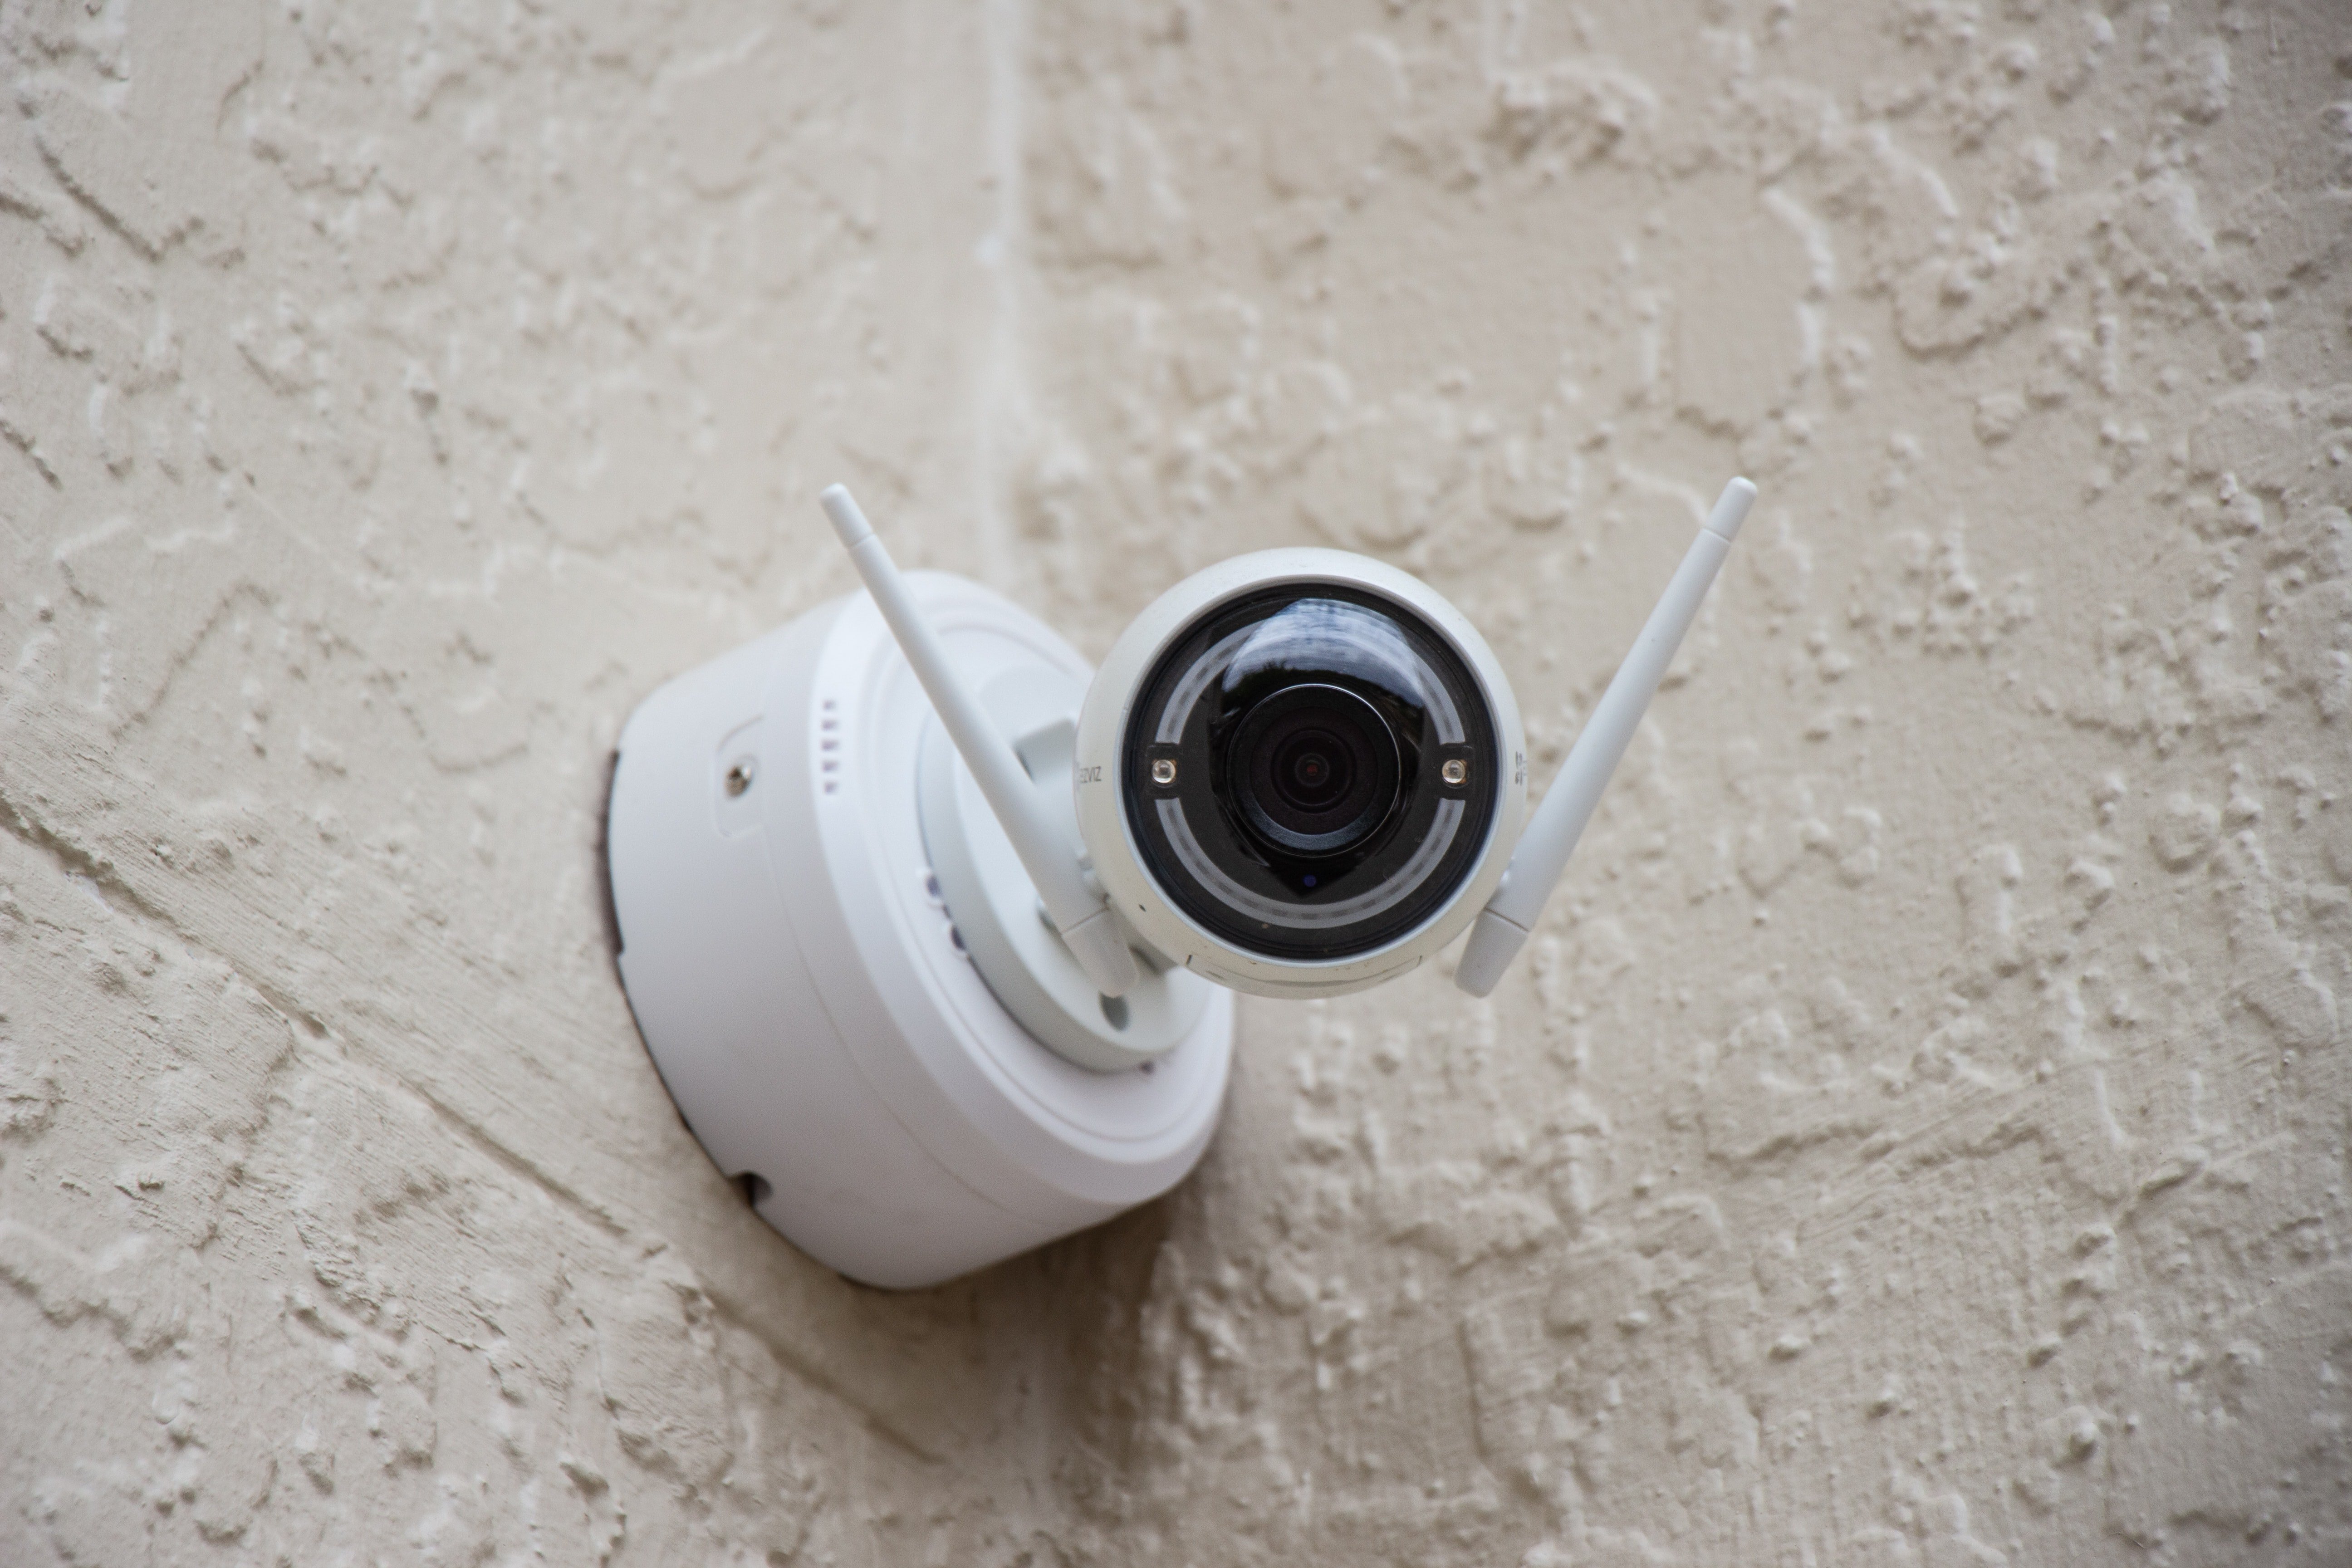 Marie installierte versteckte Kameras in ihrem Haus. | Quelle: Unsplash